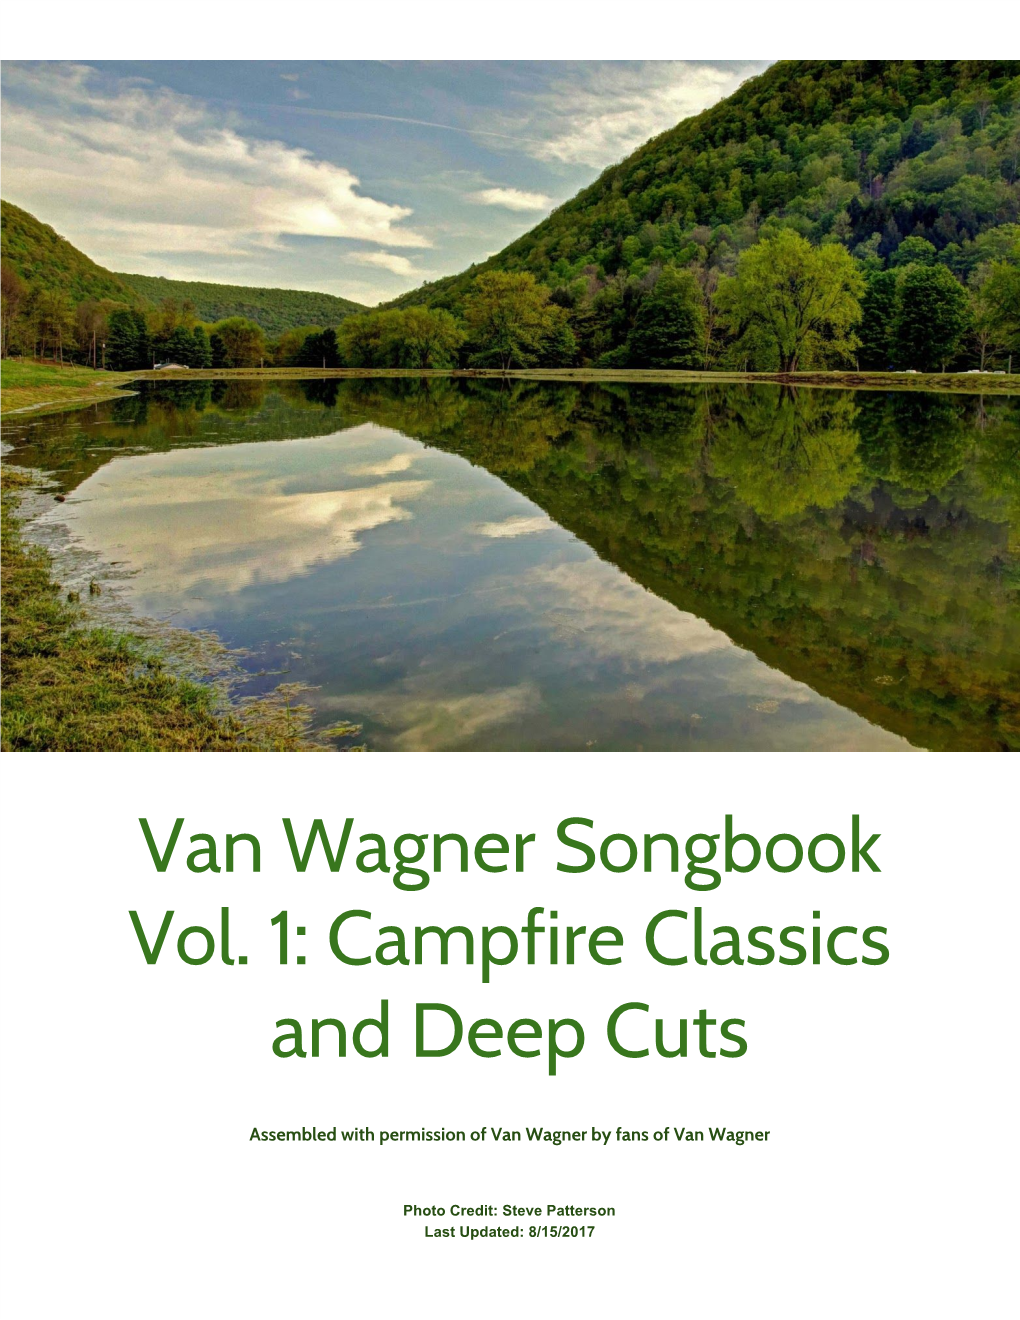 Van Wagner Songbook Vol. 1: Campfire Classics and Deep Cuts